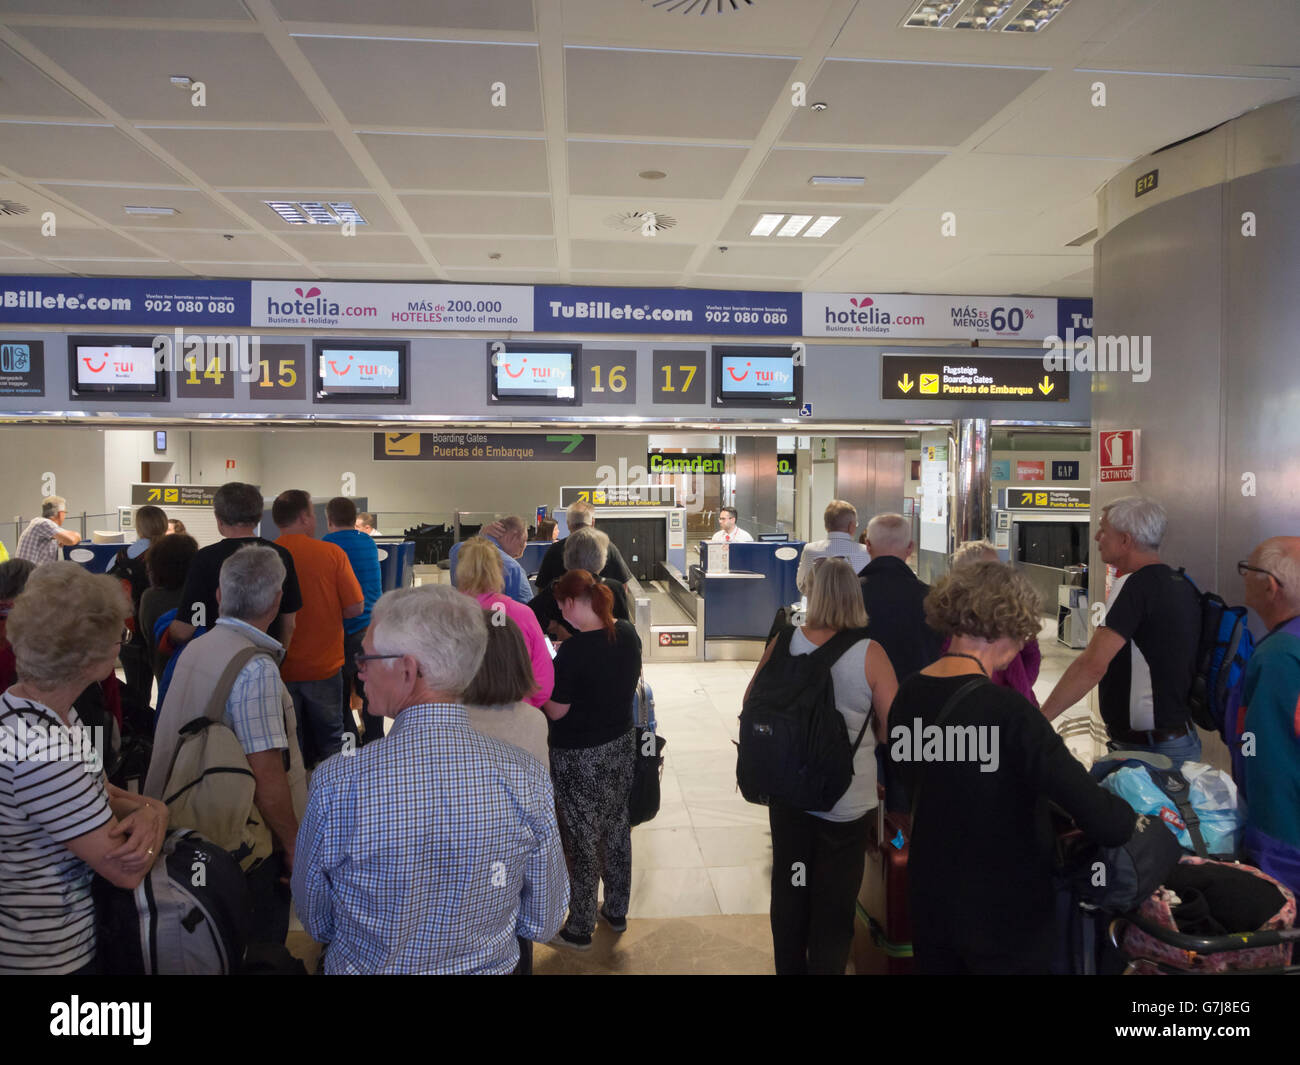 De longues lignes d'arrivée dans un aéroport espagnol ( Reina Sofia), les touristes sur leur chemin à la maison d'une maison de vacances à Tenerife Espagne Banque D'Images